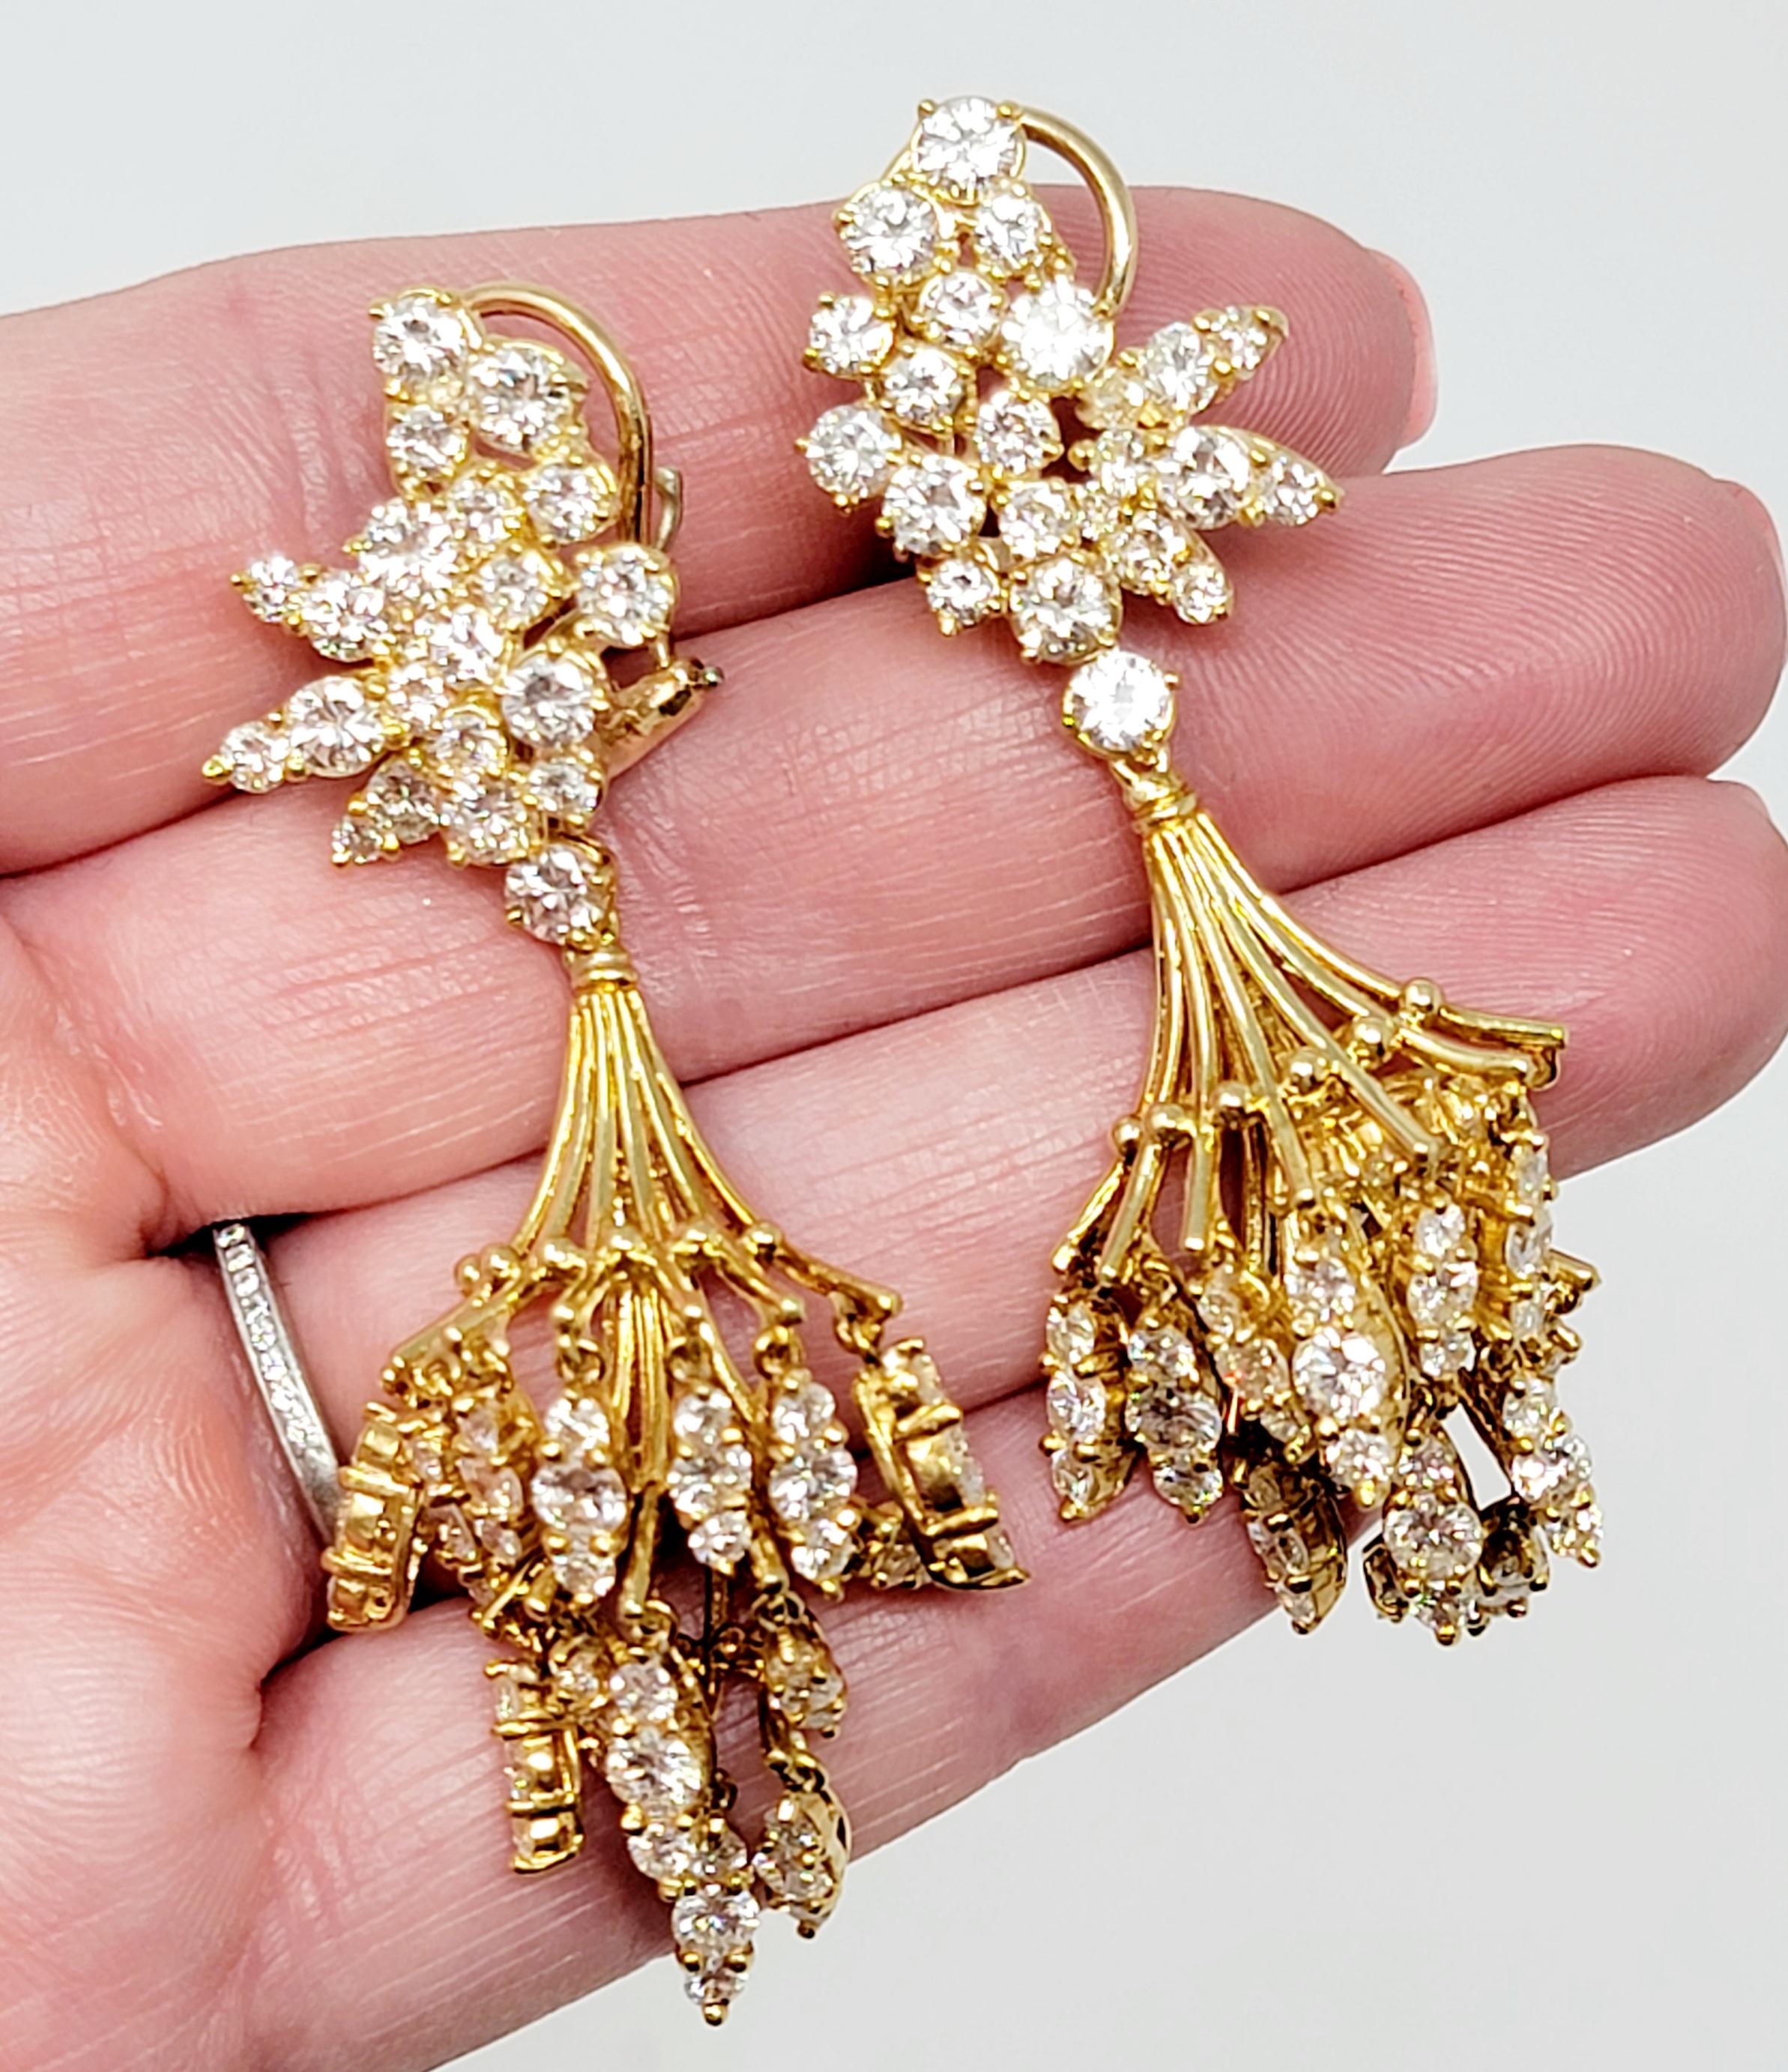 Women's Dangling Chandelier Earrings in 18 Karat Gold 11.59 Carats Total Round Diamonds For Sale